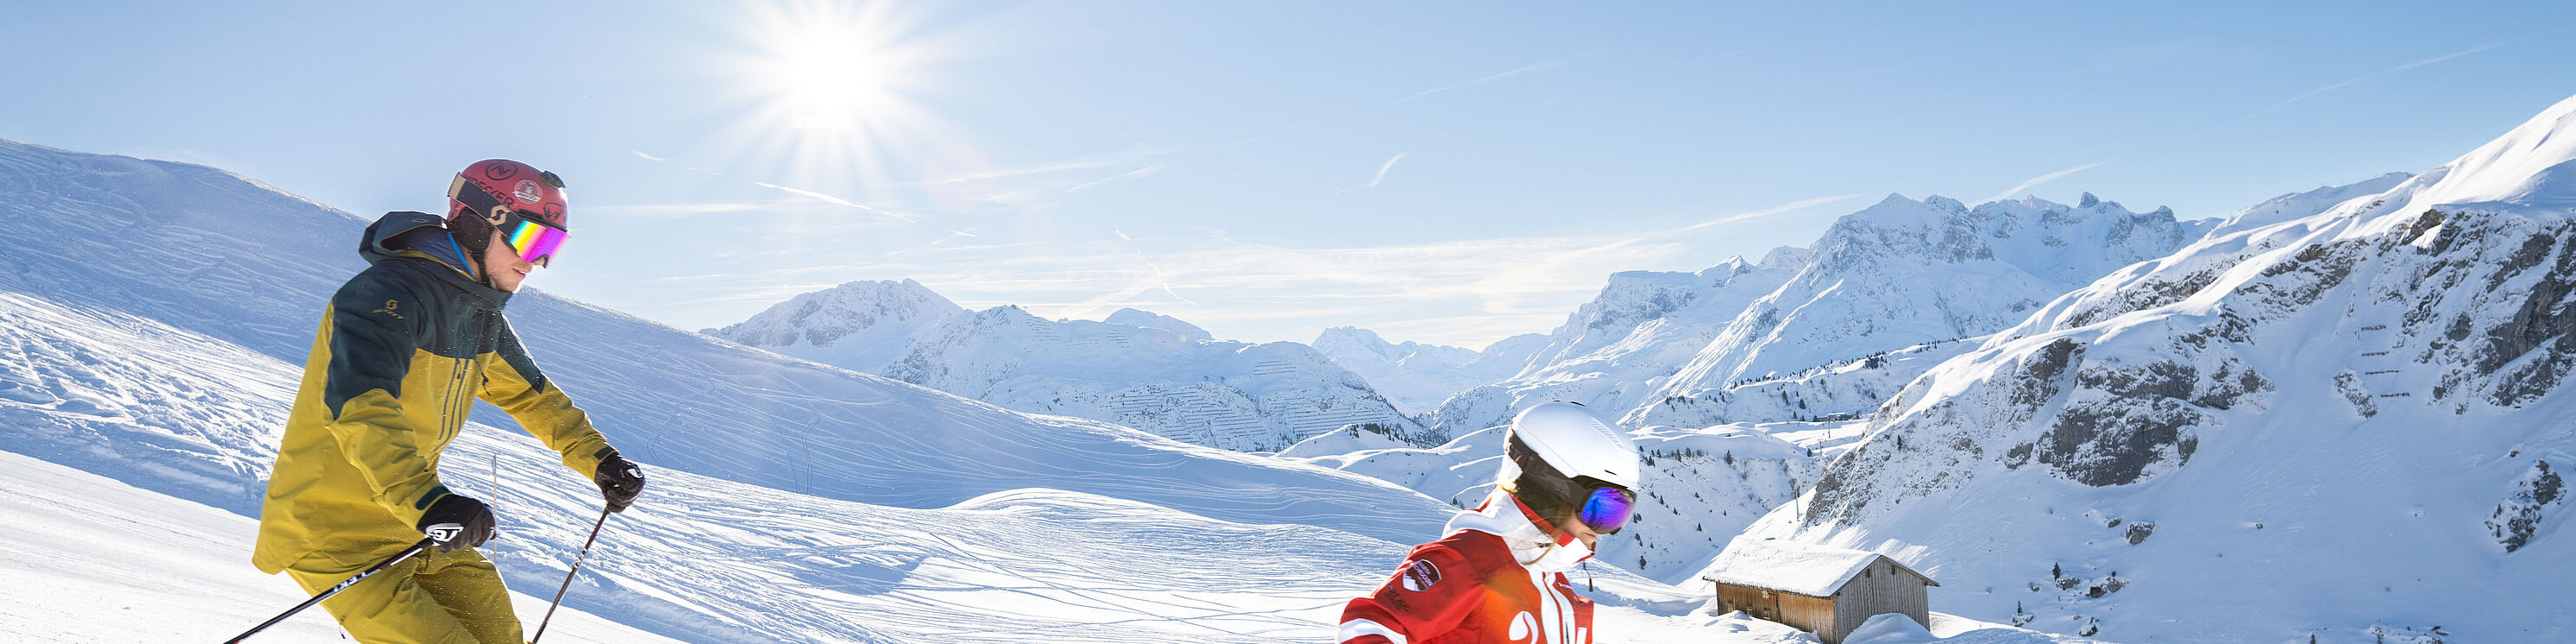 Een deelnemer aan een privécursus volgt de skileraar op de piste